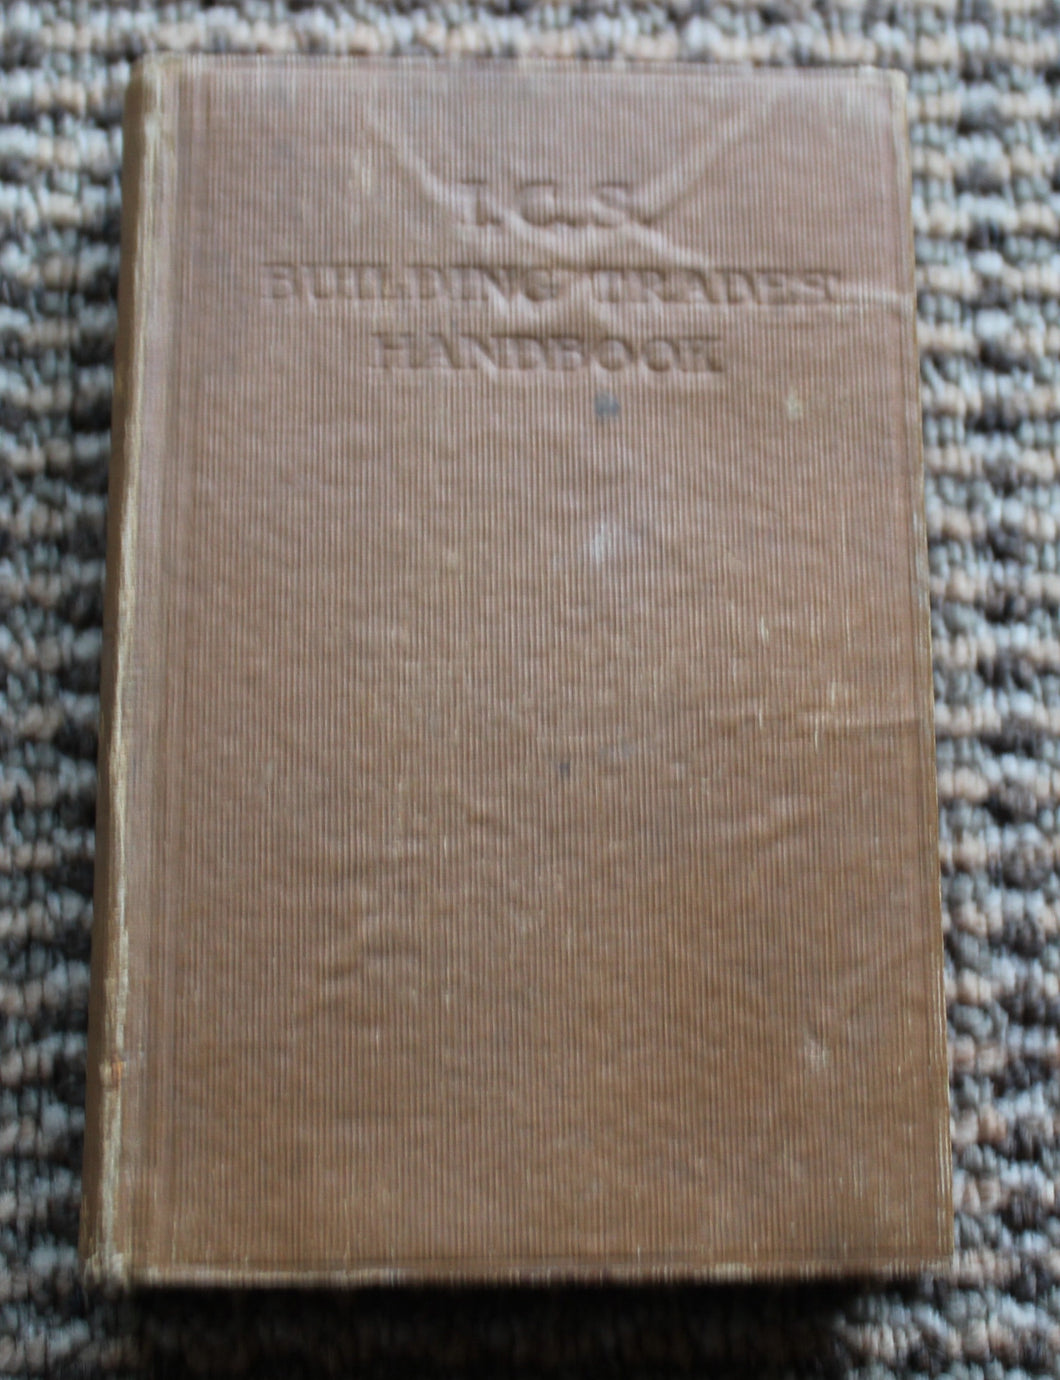 The Building Trades Handbook by International Correspondence Schools 1914